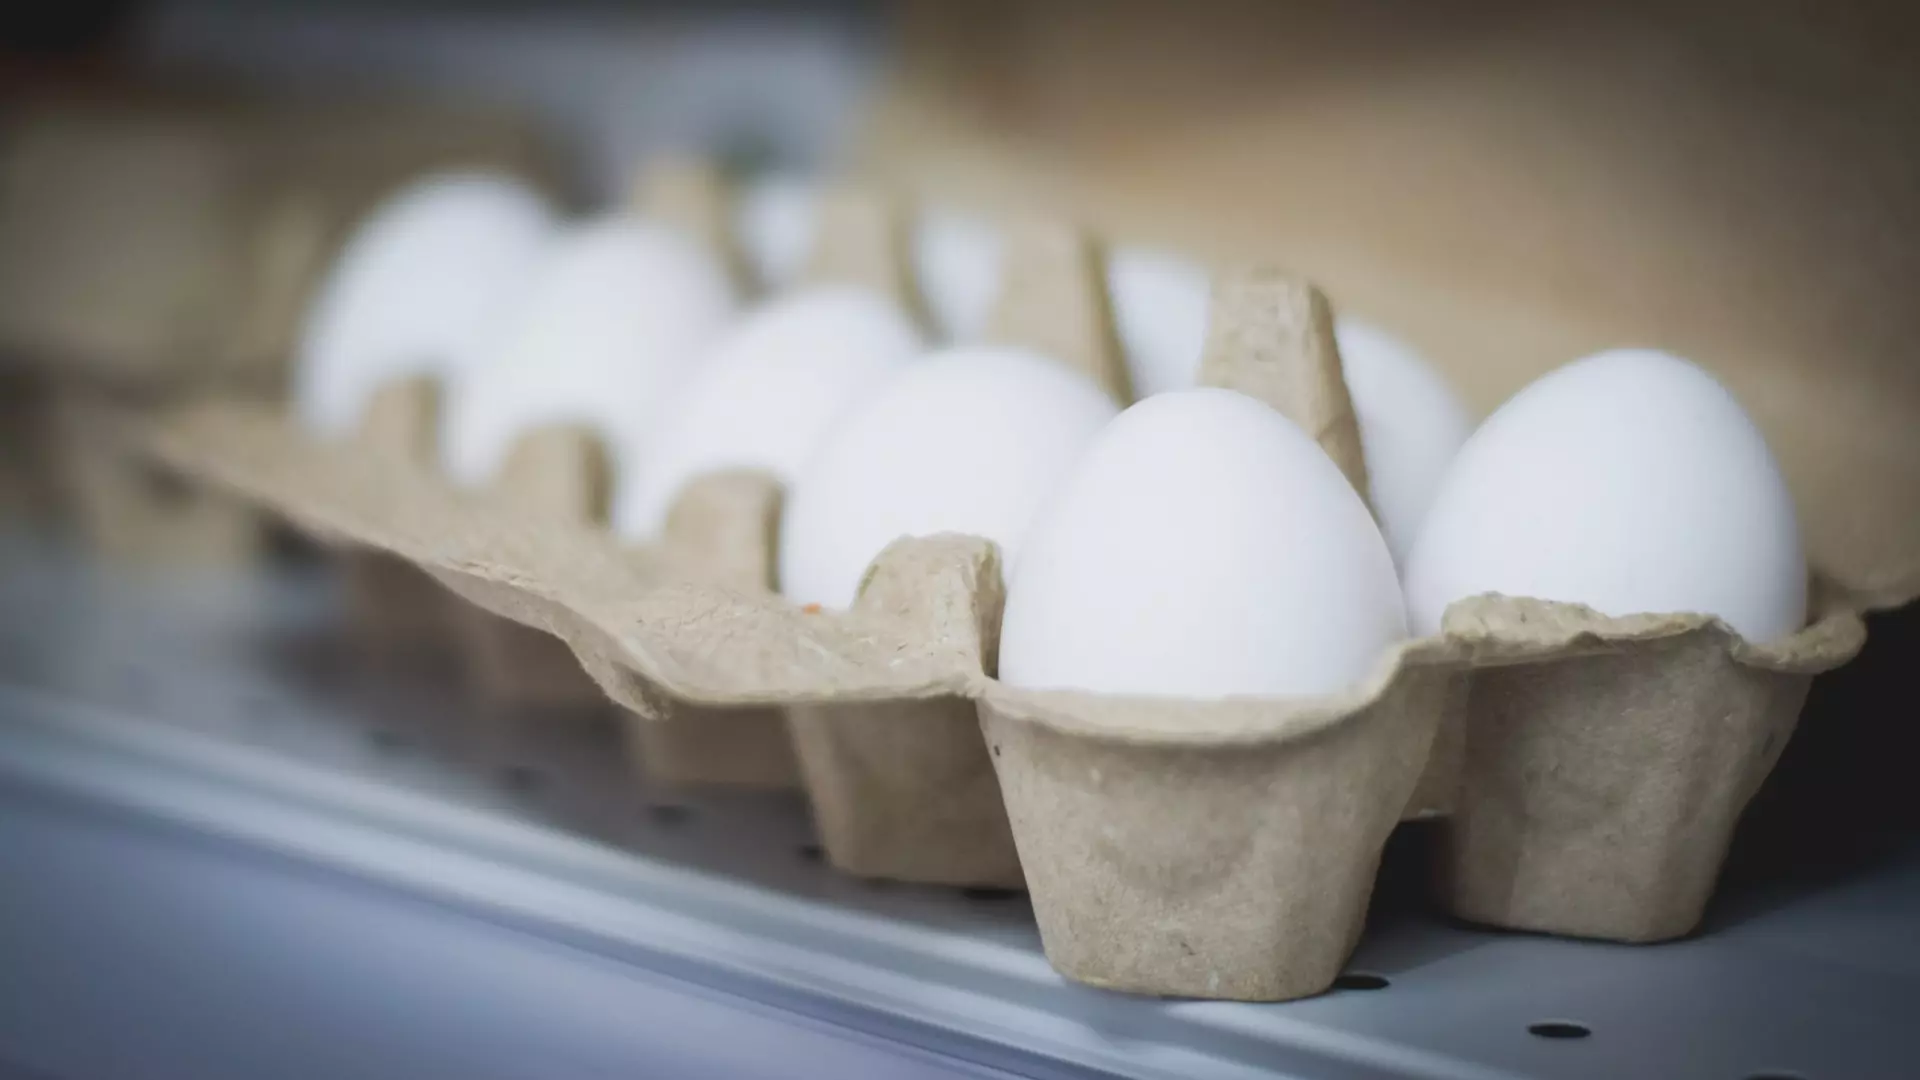 УФАС проверит цены на яйца в торговых сетях Челябинской области